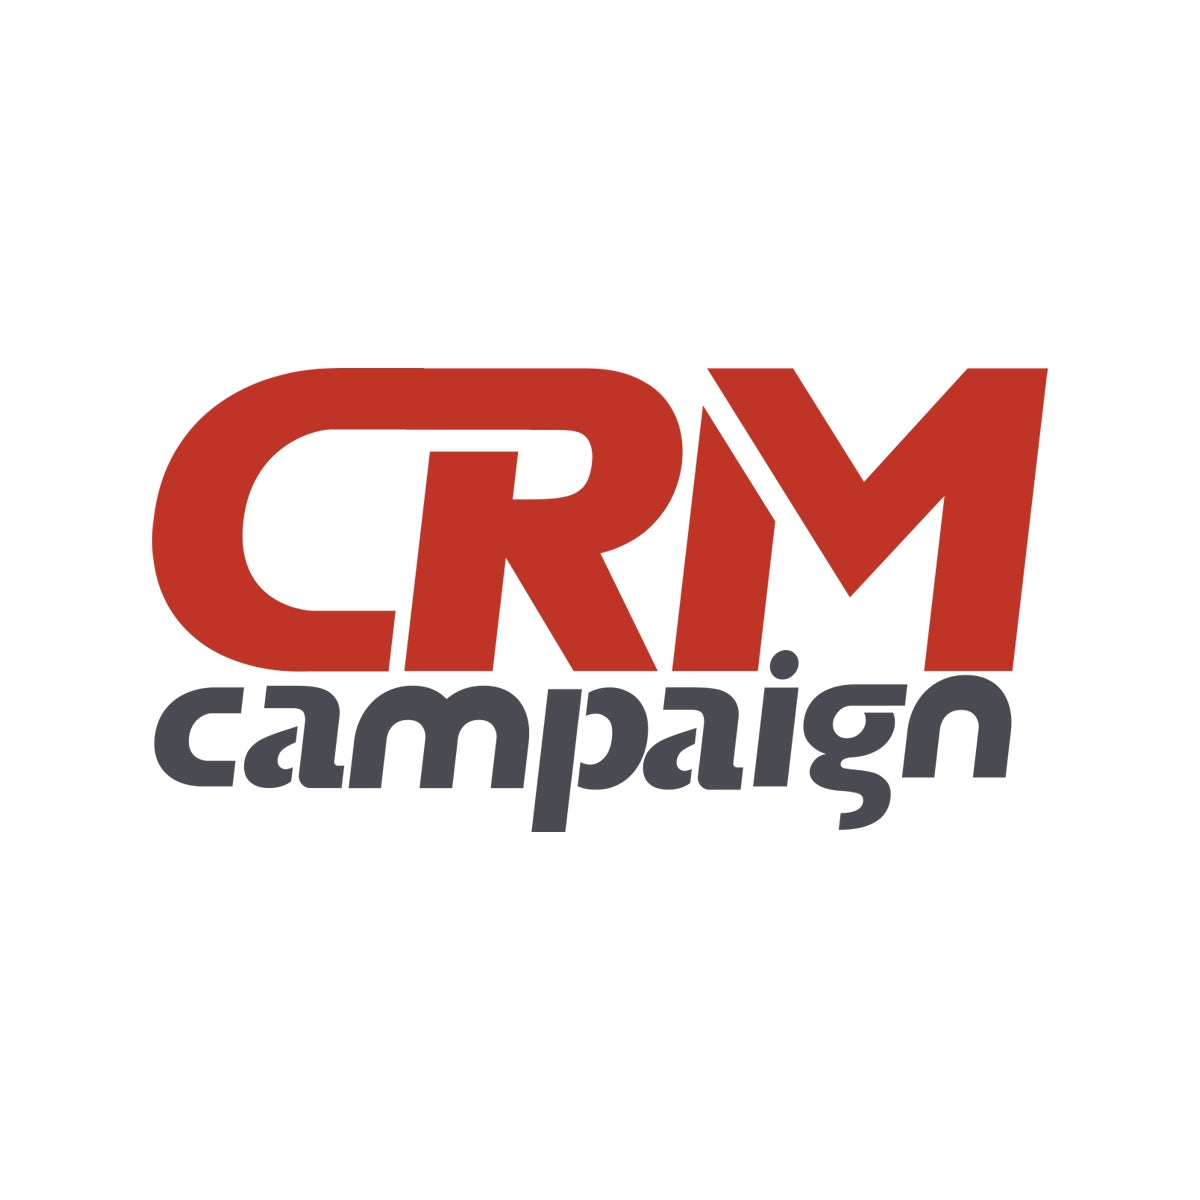 crmcampaign.com